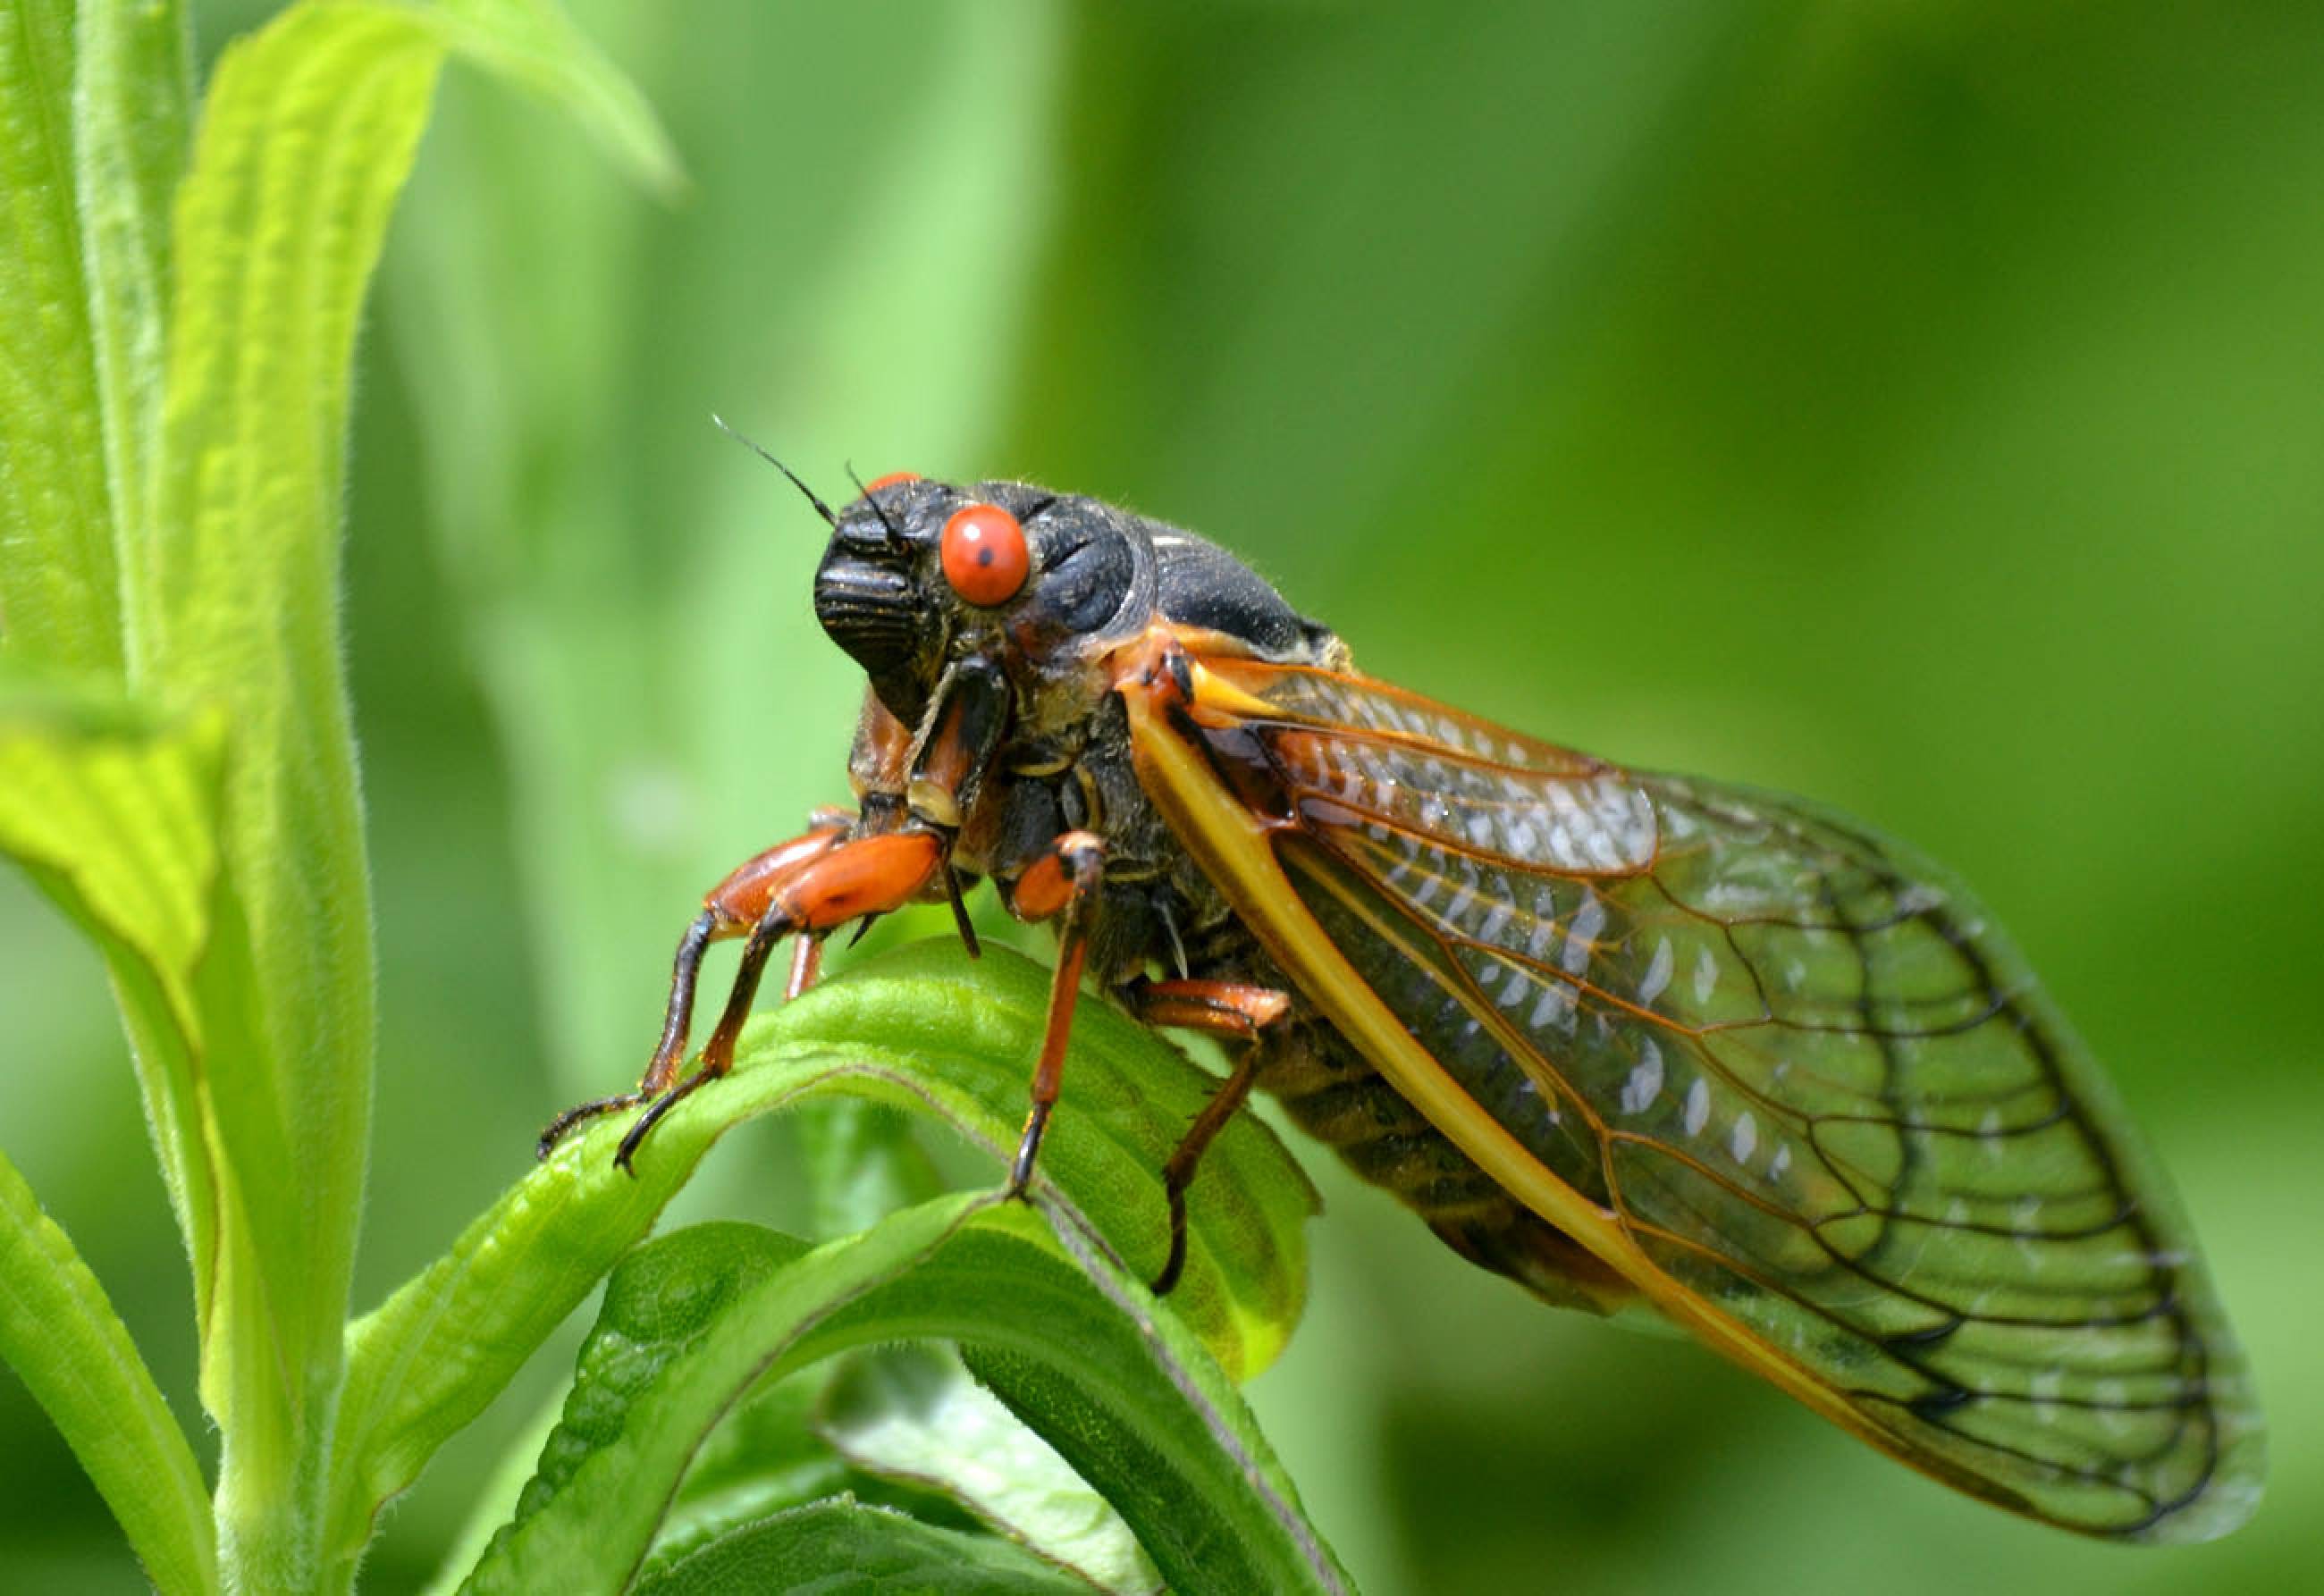 Cicadas 17 Year